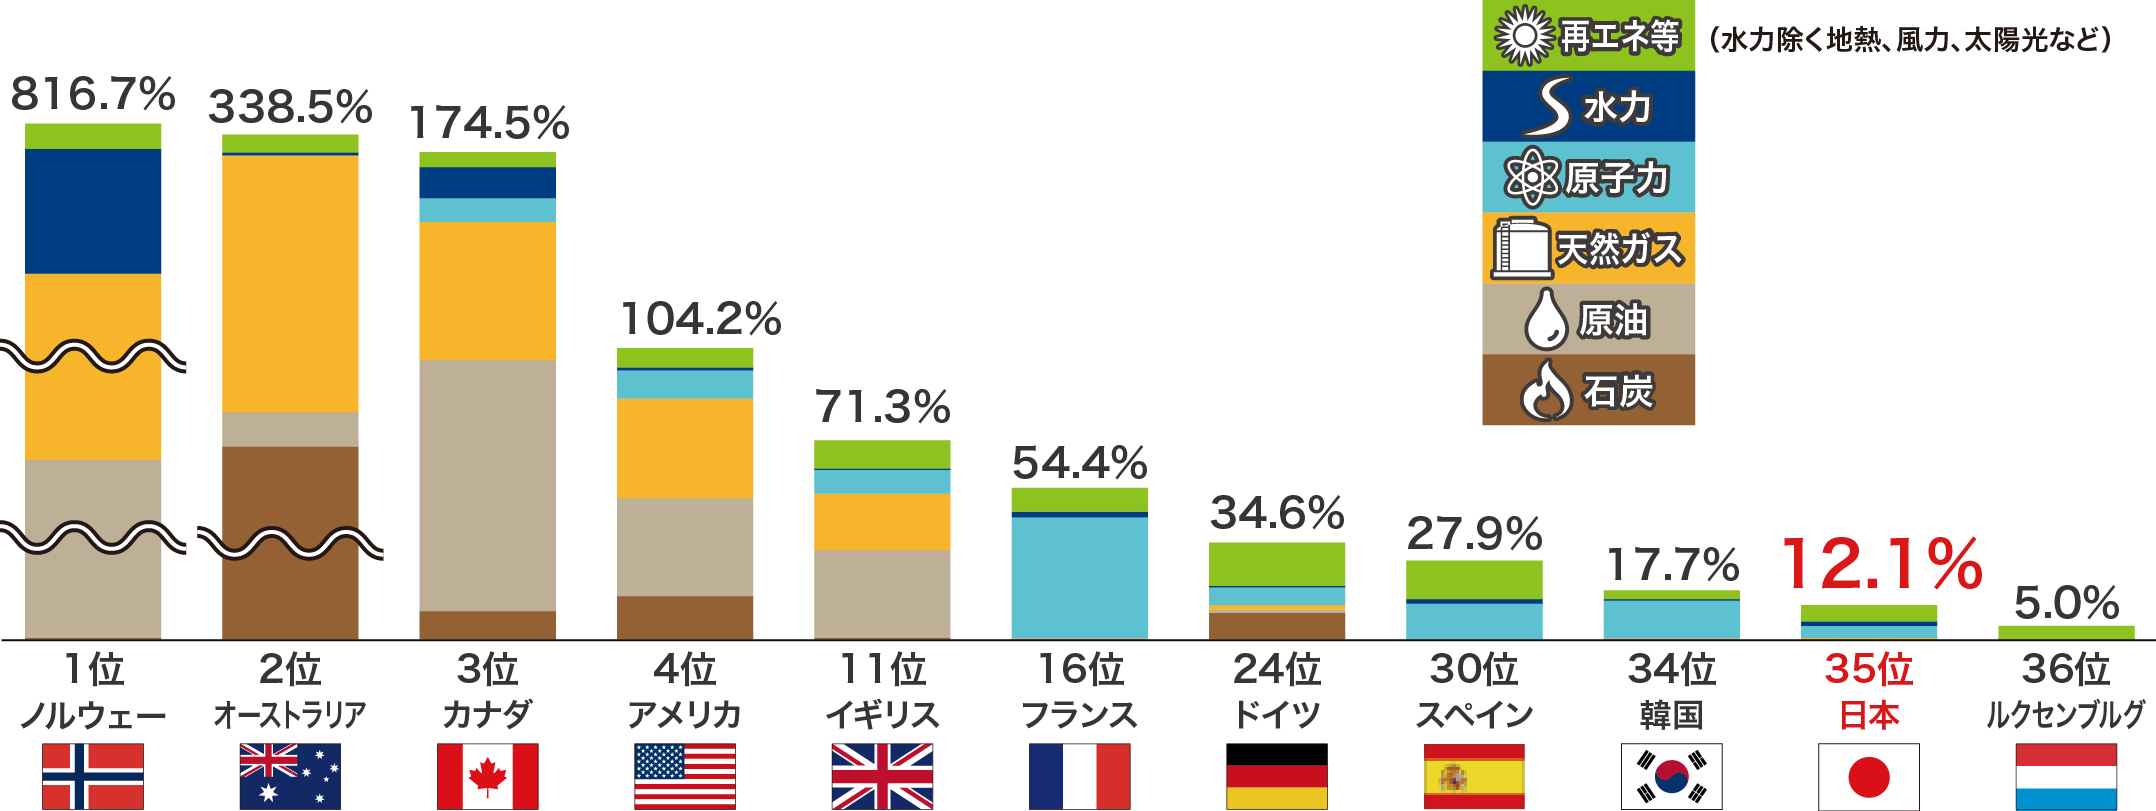 日本 エネルギー自給率